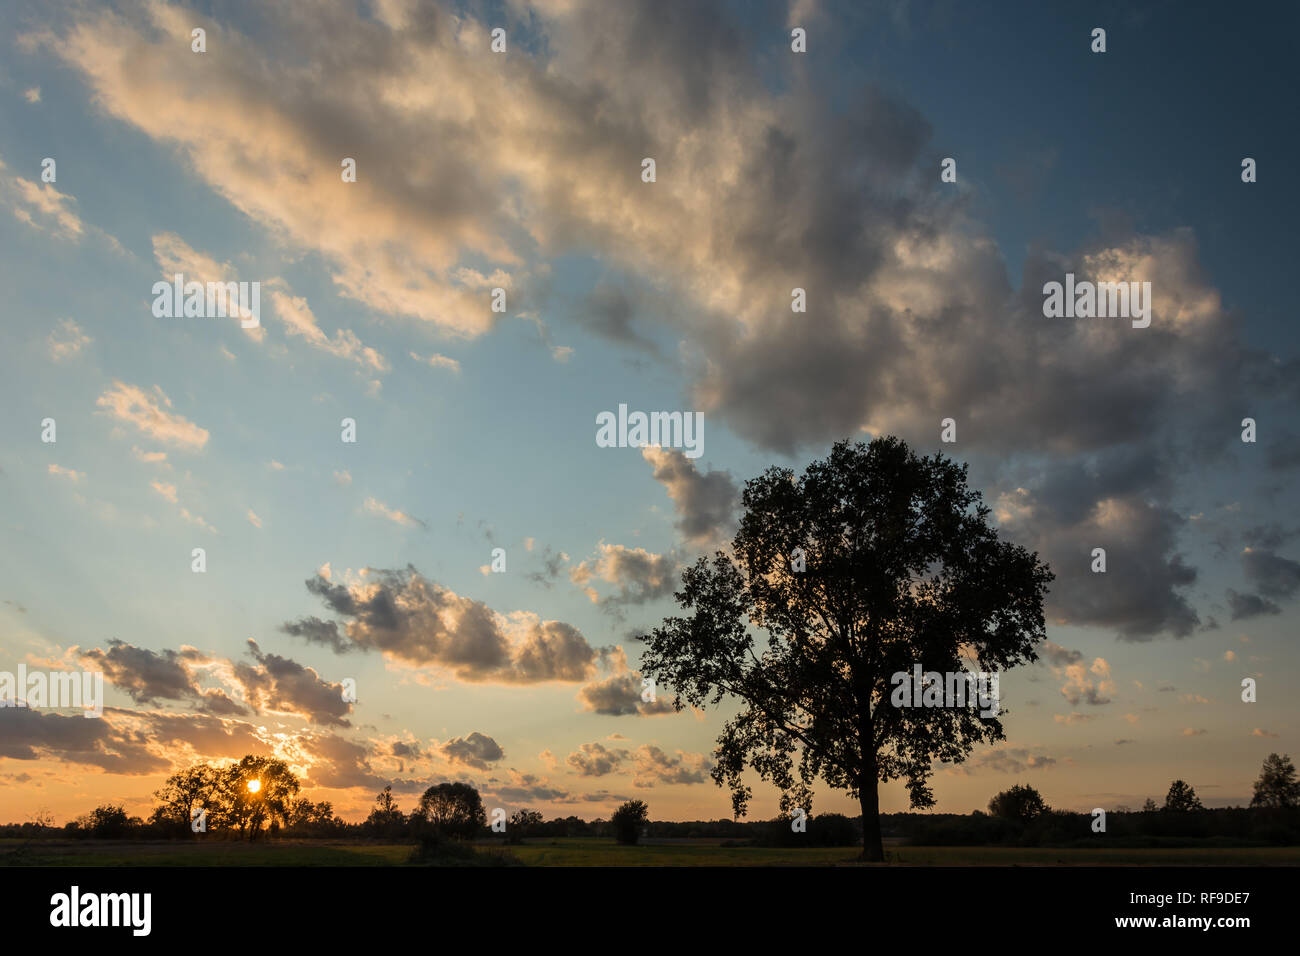 Silhouette einer großen Eiche Baum, auf einer Wiese, Sonnenuntergang, Wolken im blauen Himmel Stockfoto